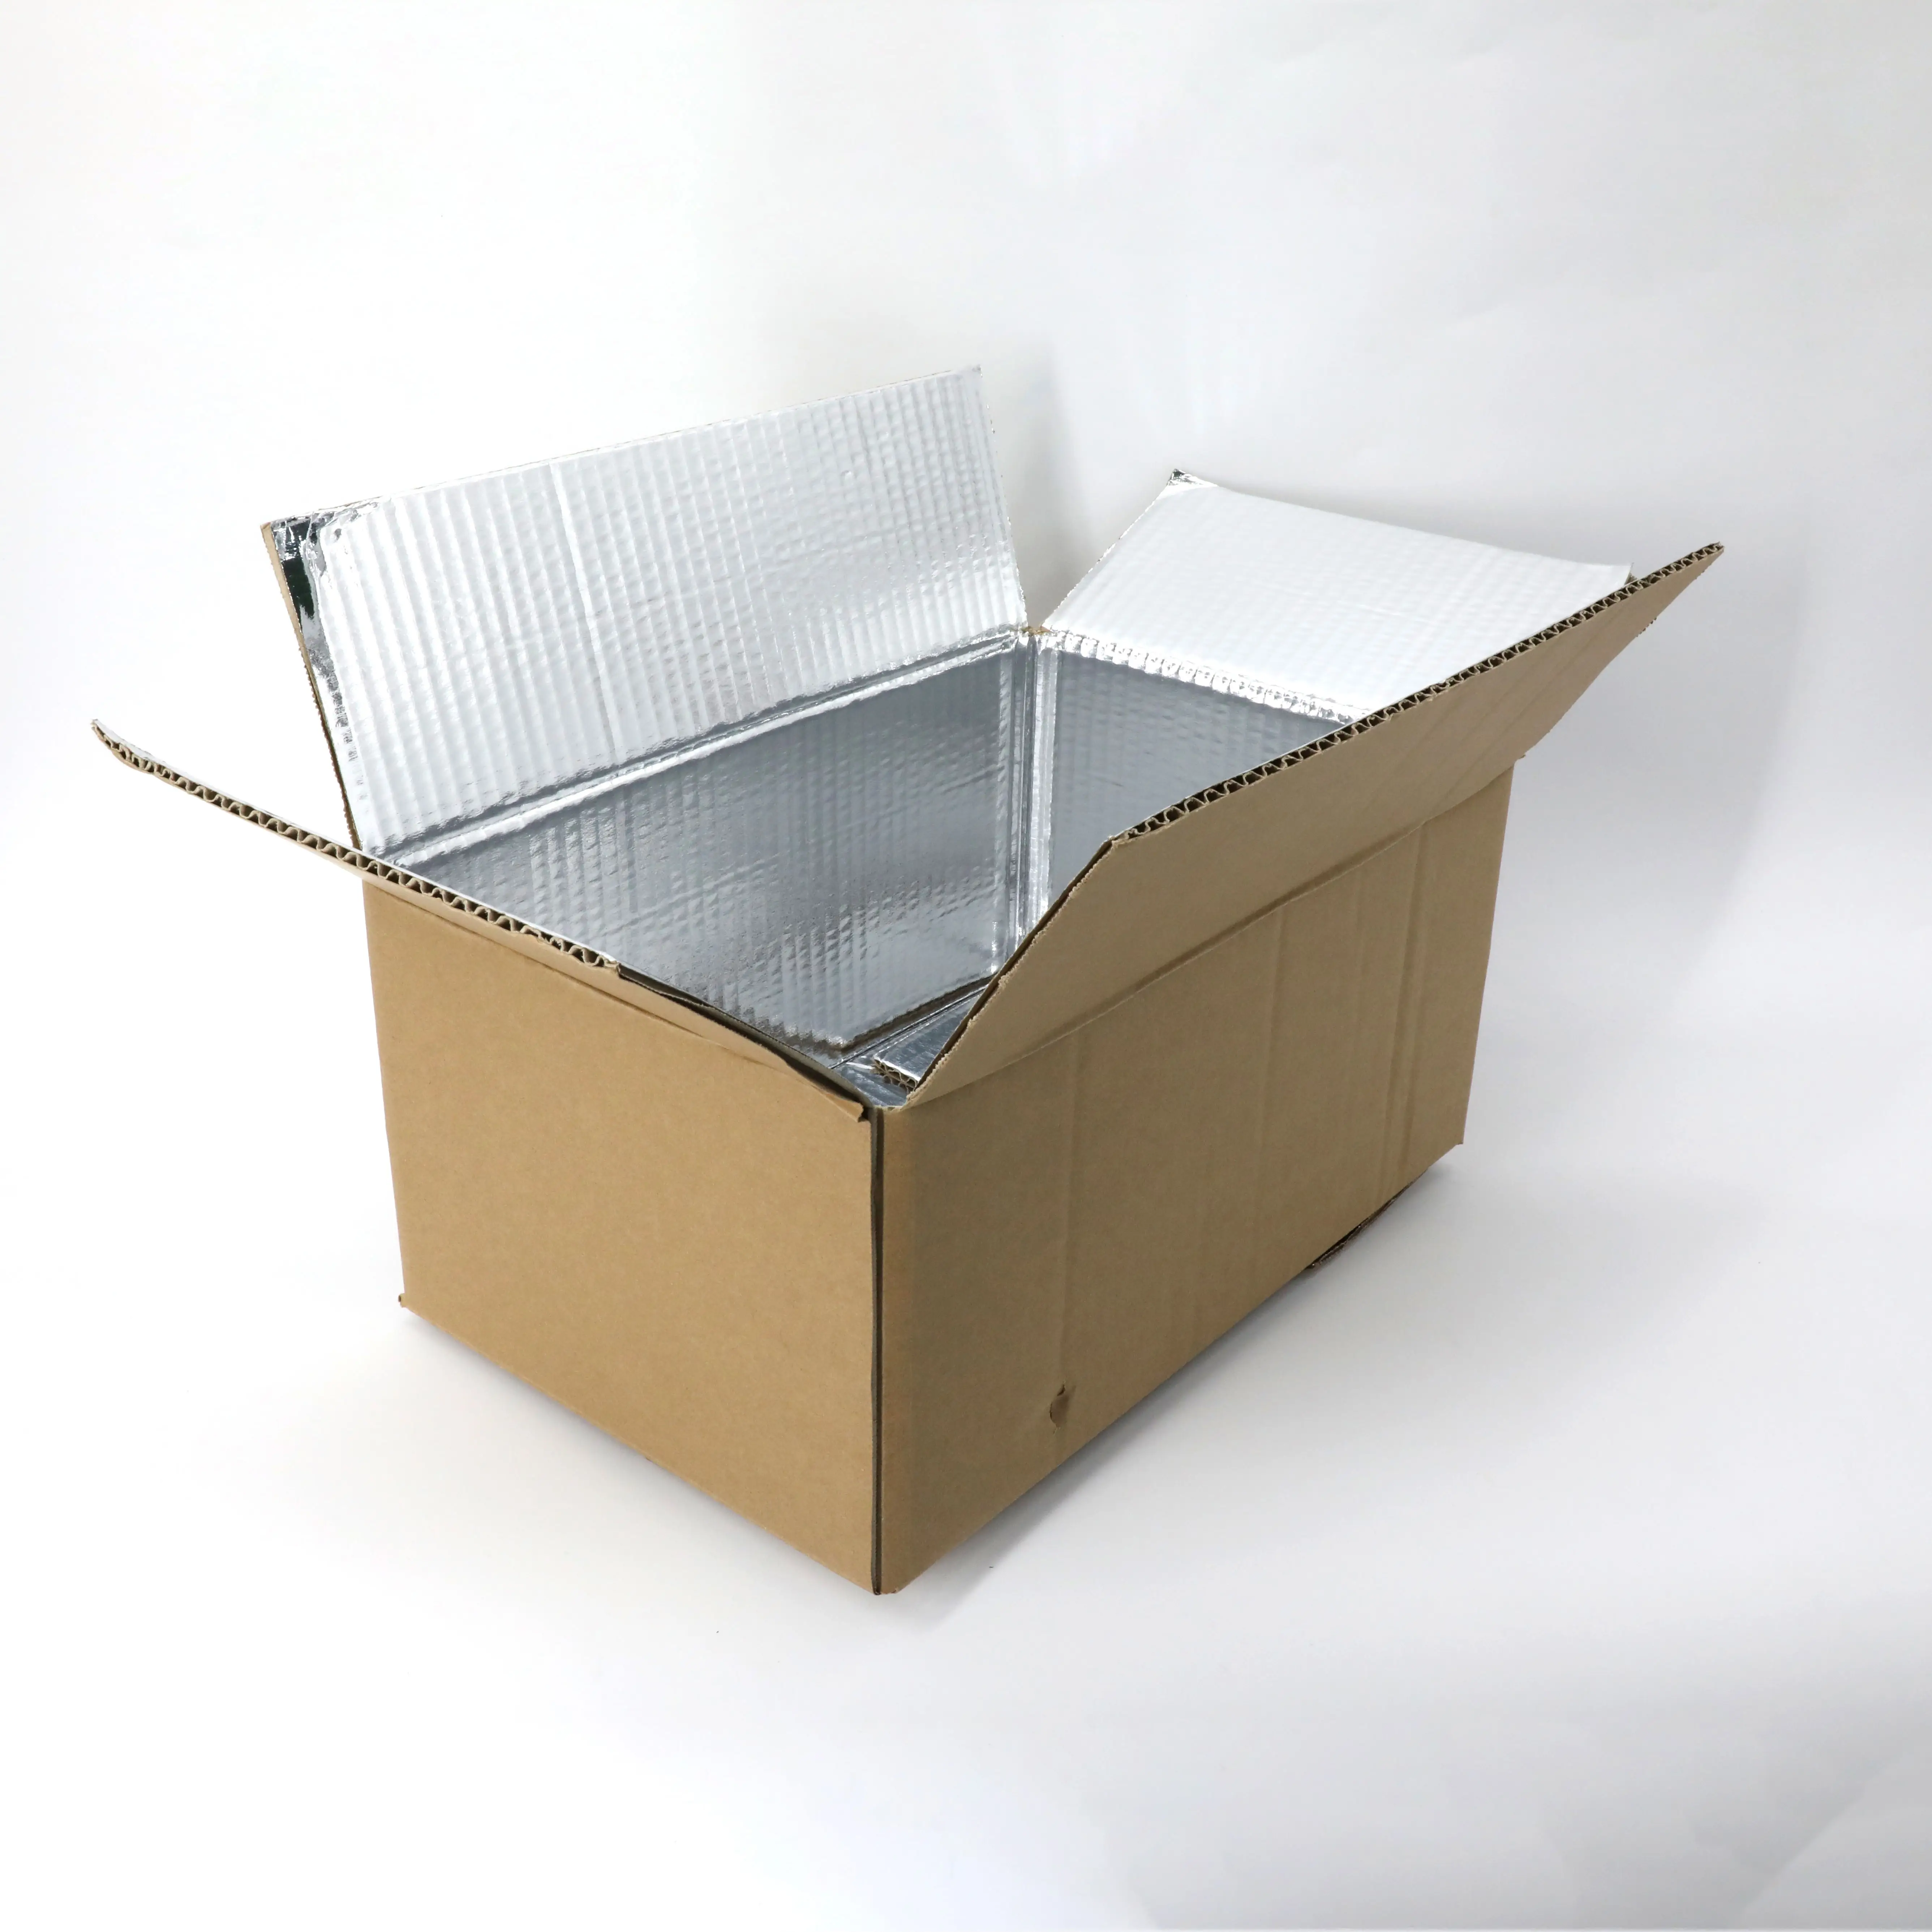 Caja de cartón Pescado Verduras Poliestireno Cajas de envío aisladas para alimentos congelados